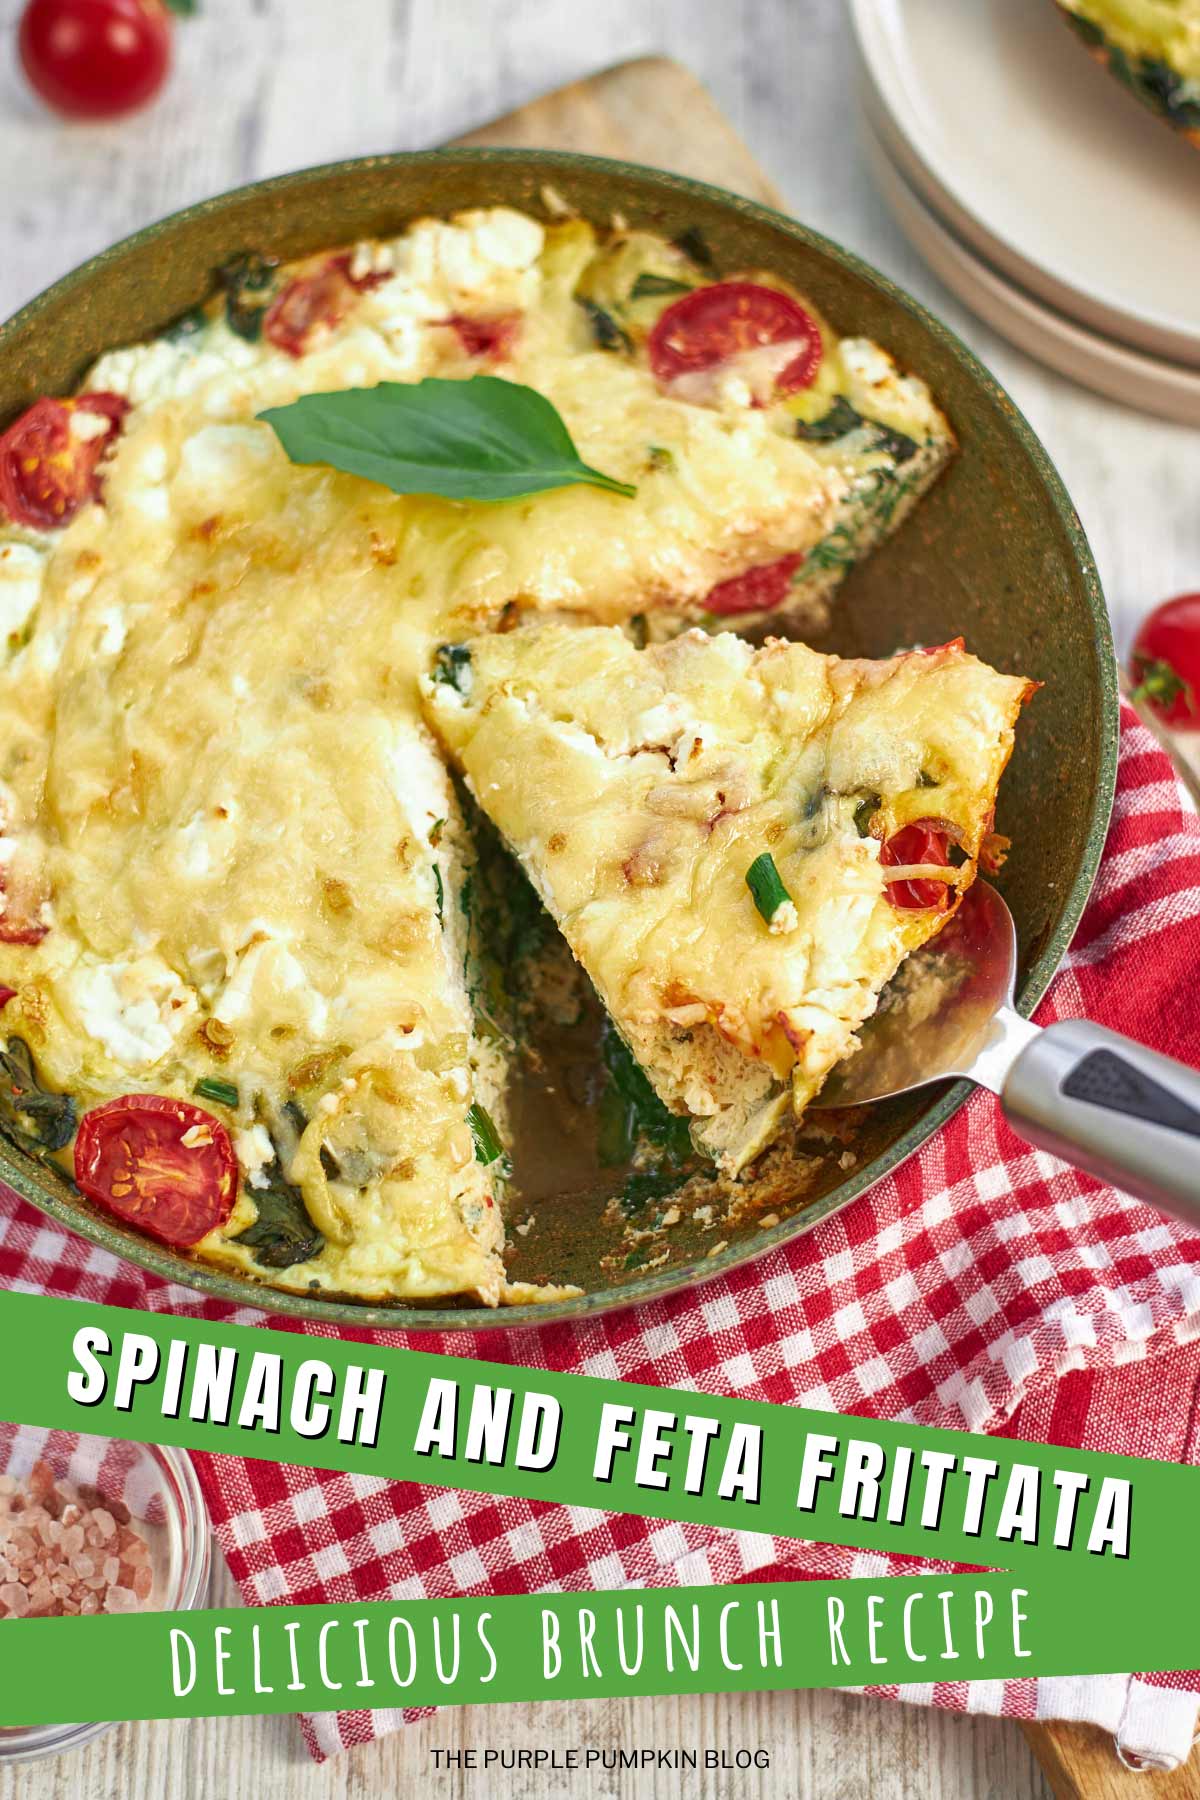 Spinach-Feta-Frittata-Delicious-Brunch-Recipe